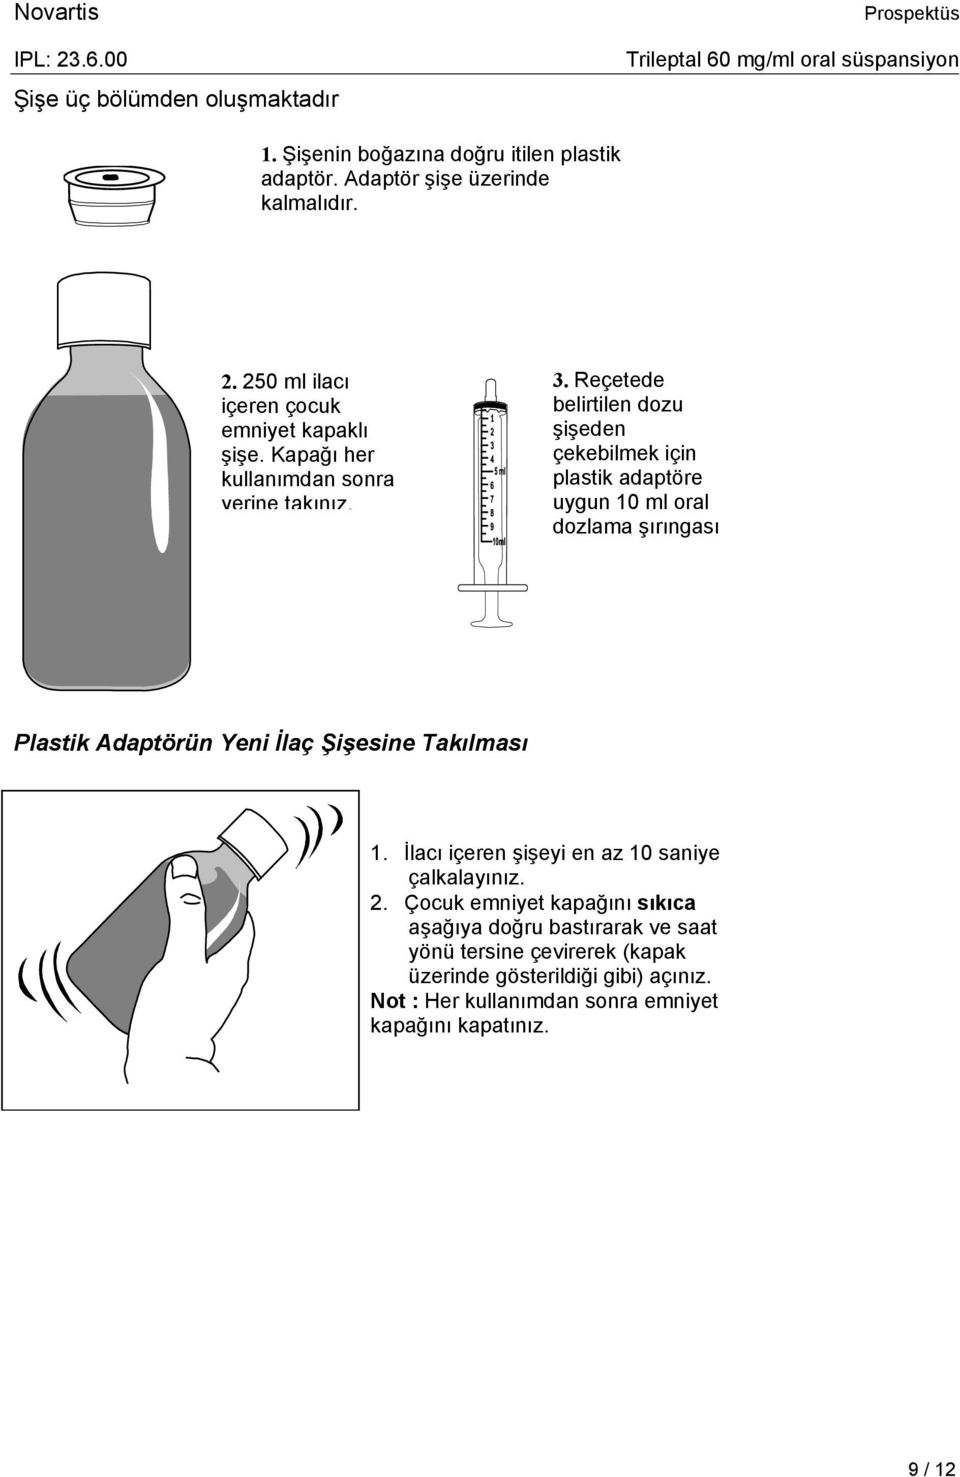 Reçetede belirtilen dozu şişeden çekebilmek için plastik adaptöre uygun 10 ml oral dozlama şırıngası Plastik Adaptörün Yeni İlaç Şişesine Takılması 1.